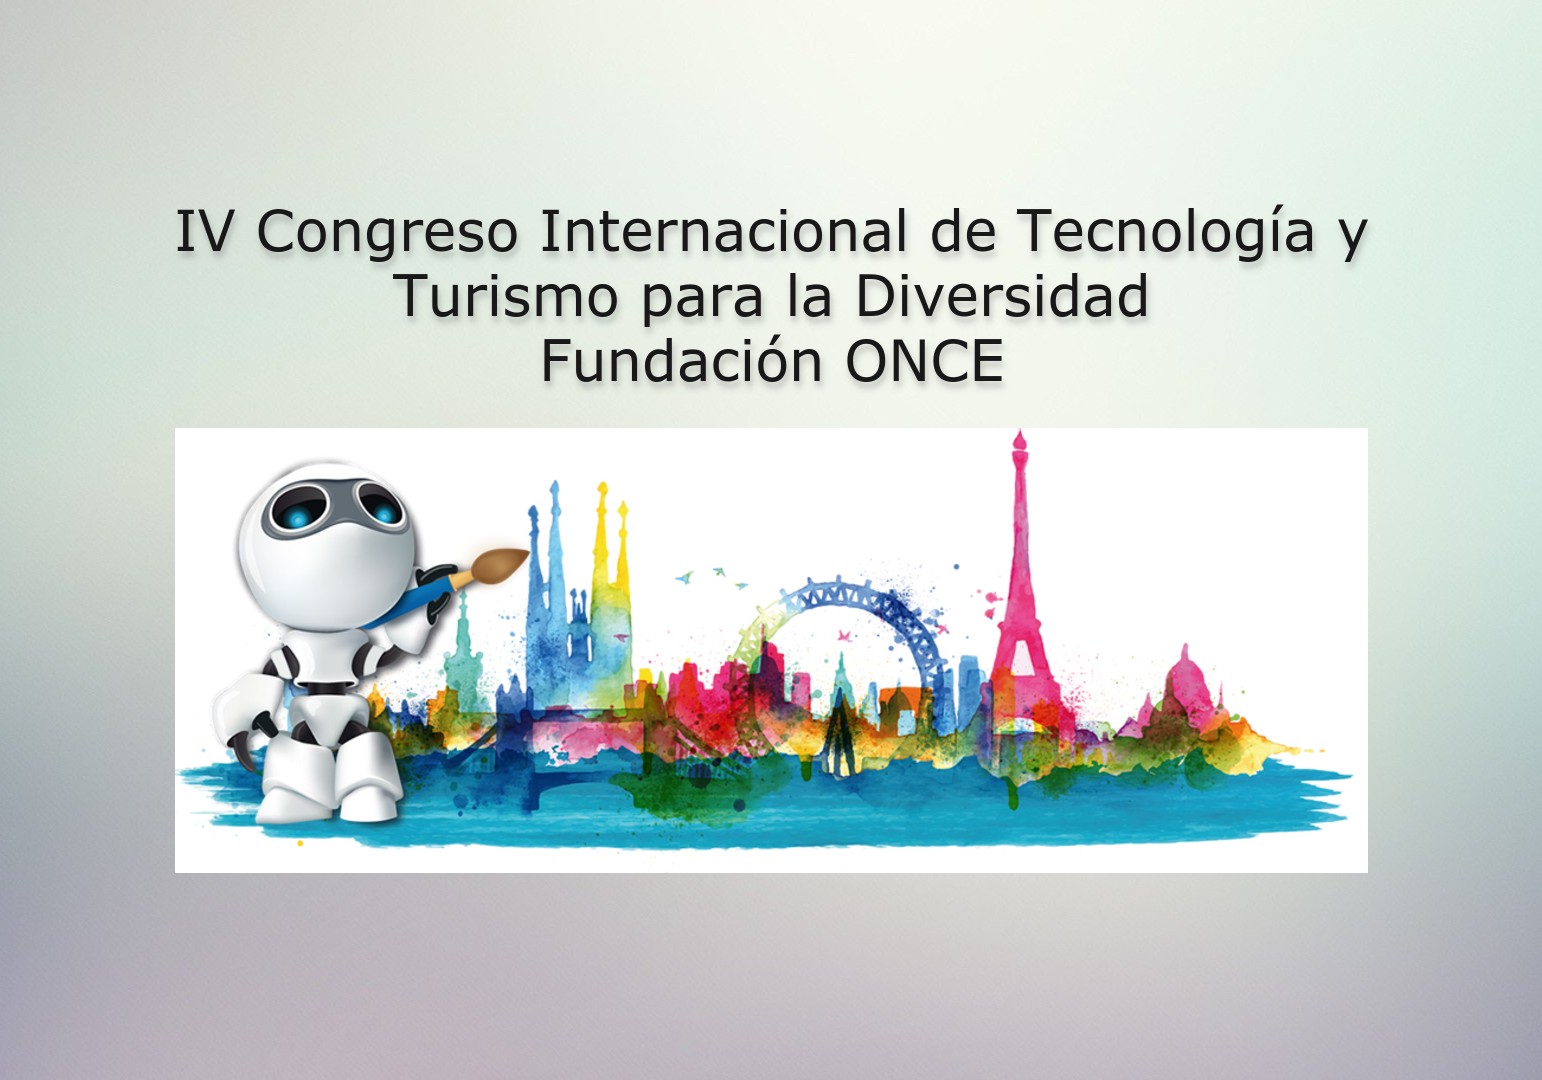 IV Congreso Internacional de Tecnología y Turismo para la Diversidad de Fundación ONCE